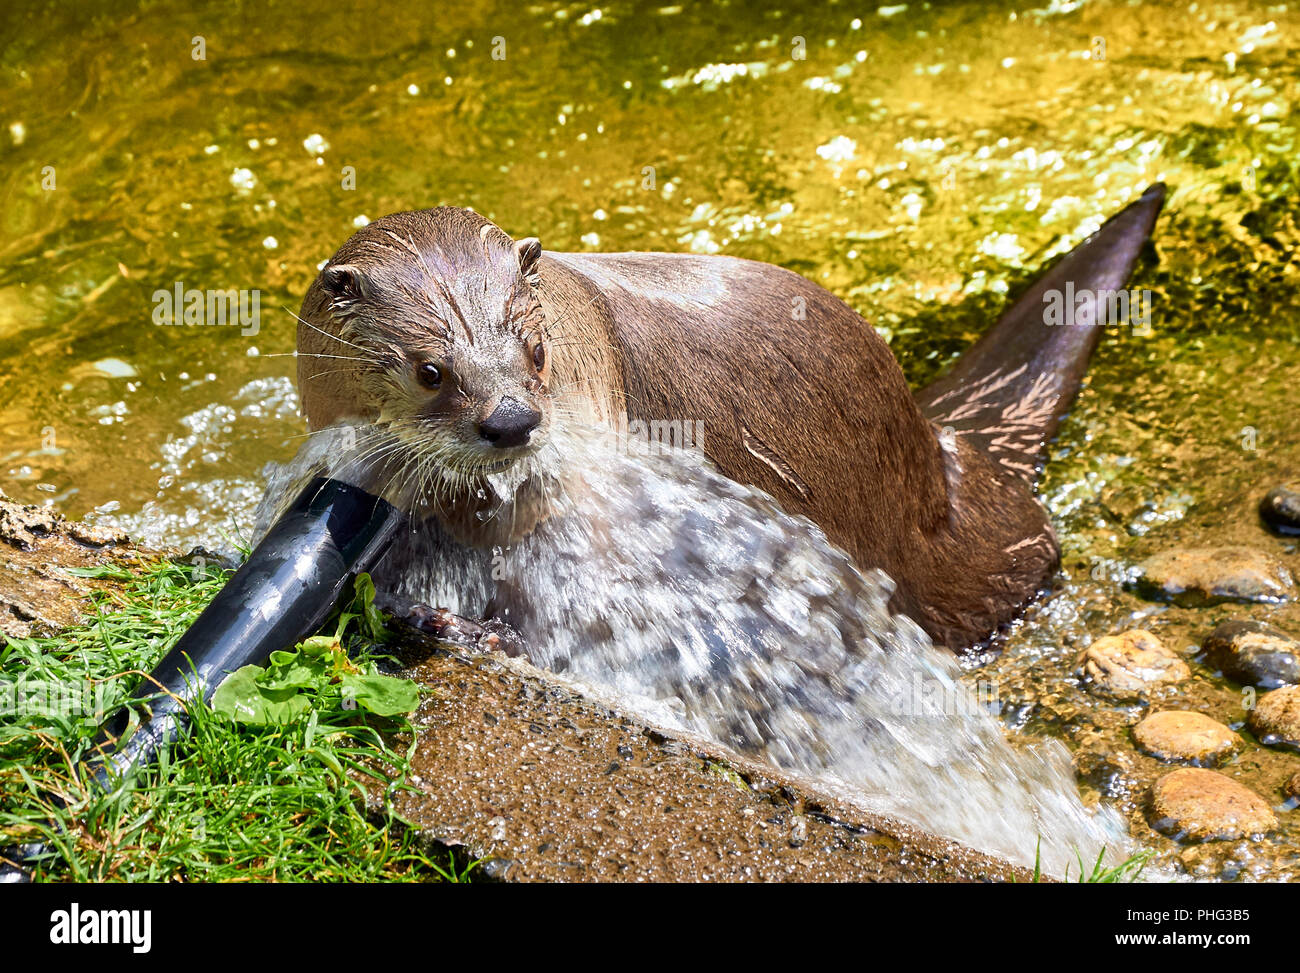 Nord America Lontra di fiume (presso un santuario) giocando con acqua proveniente da un tubo flessibile Foto Stock